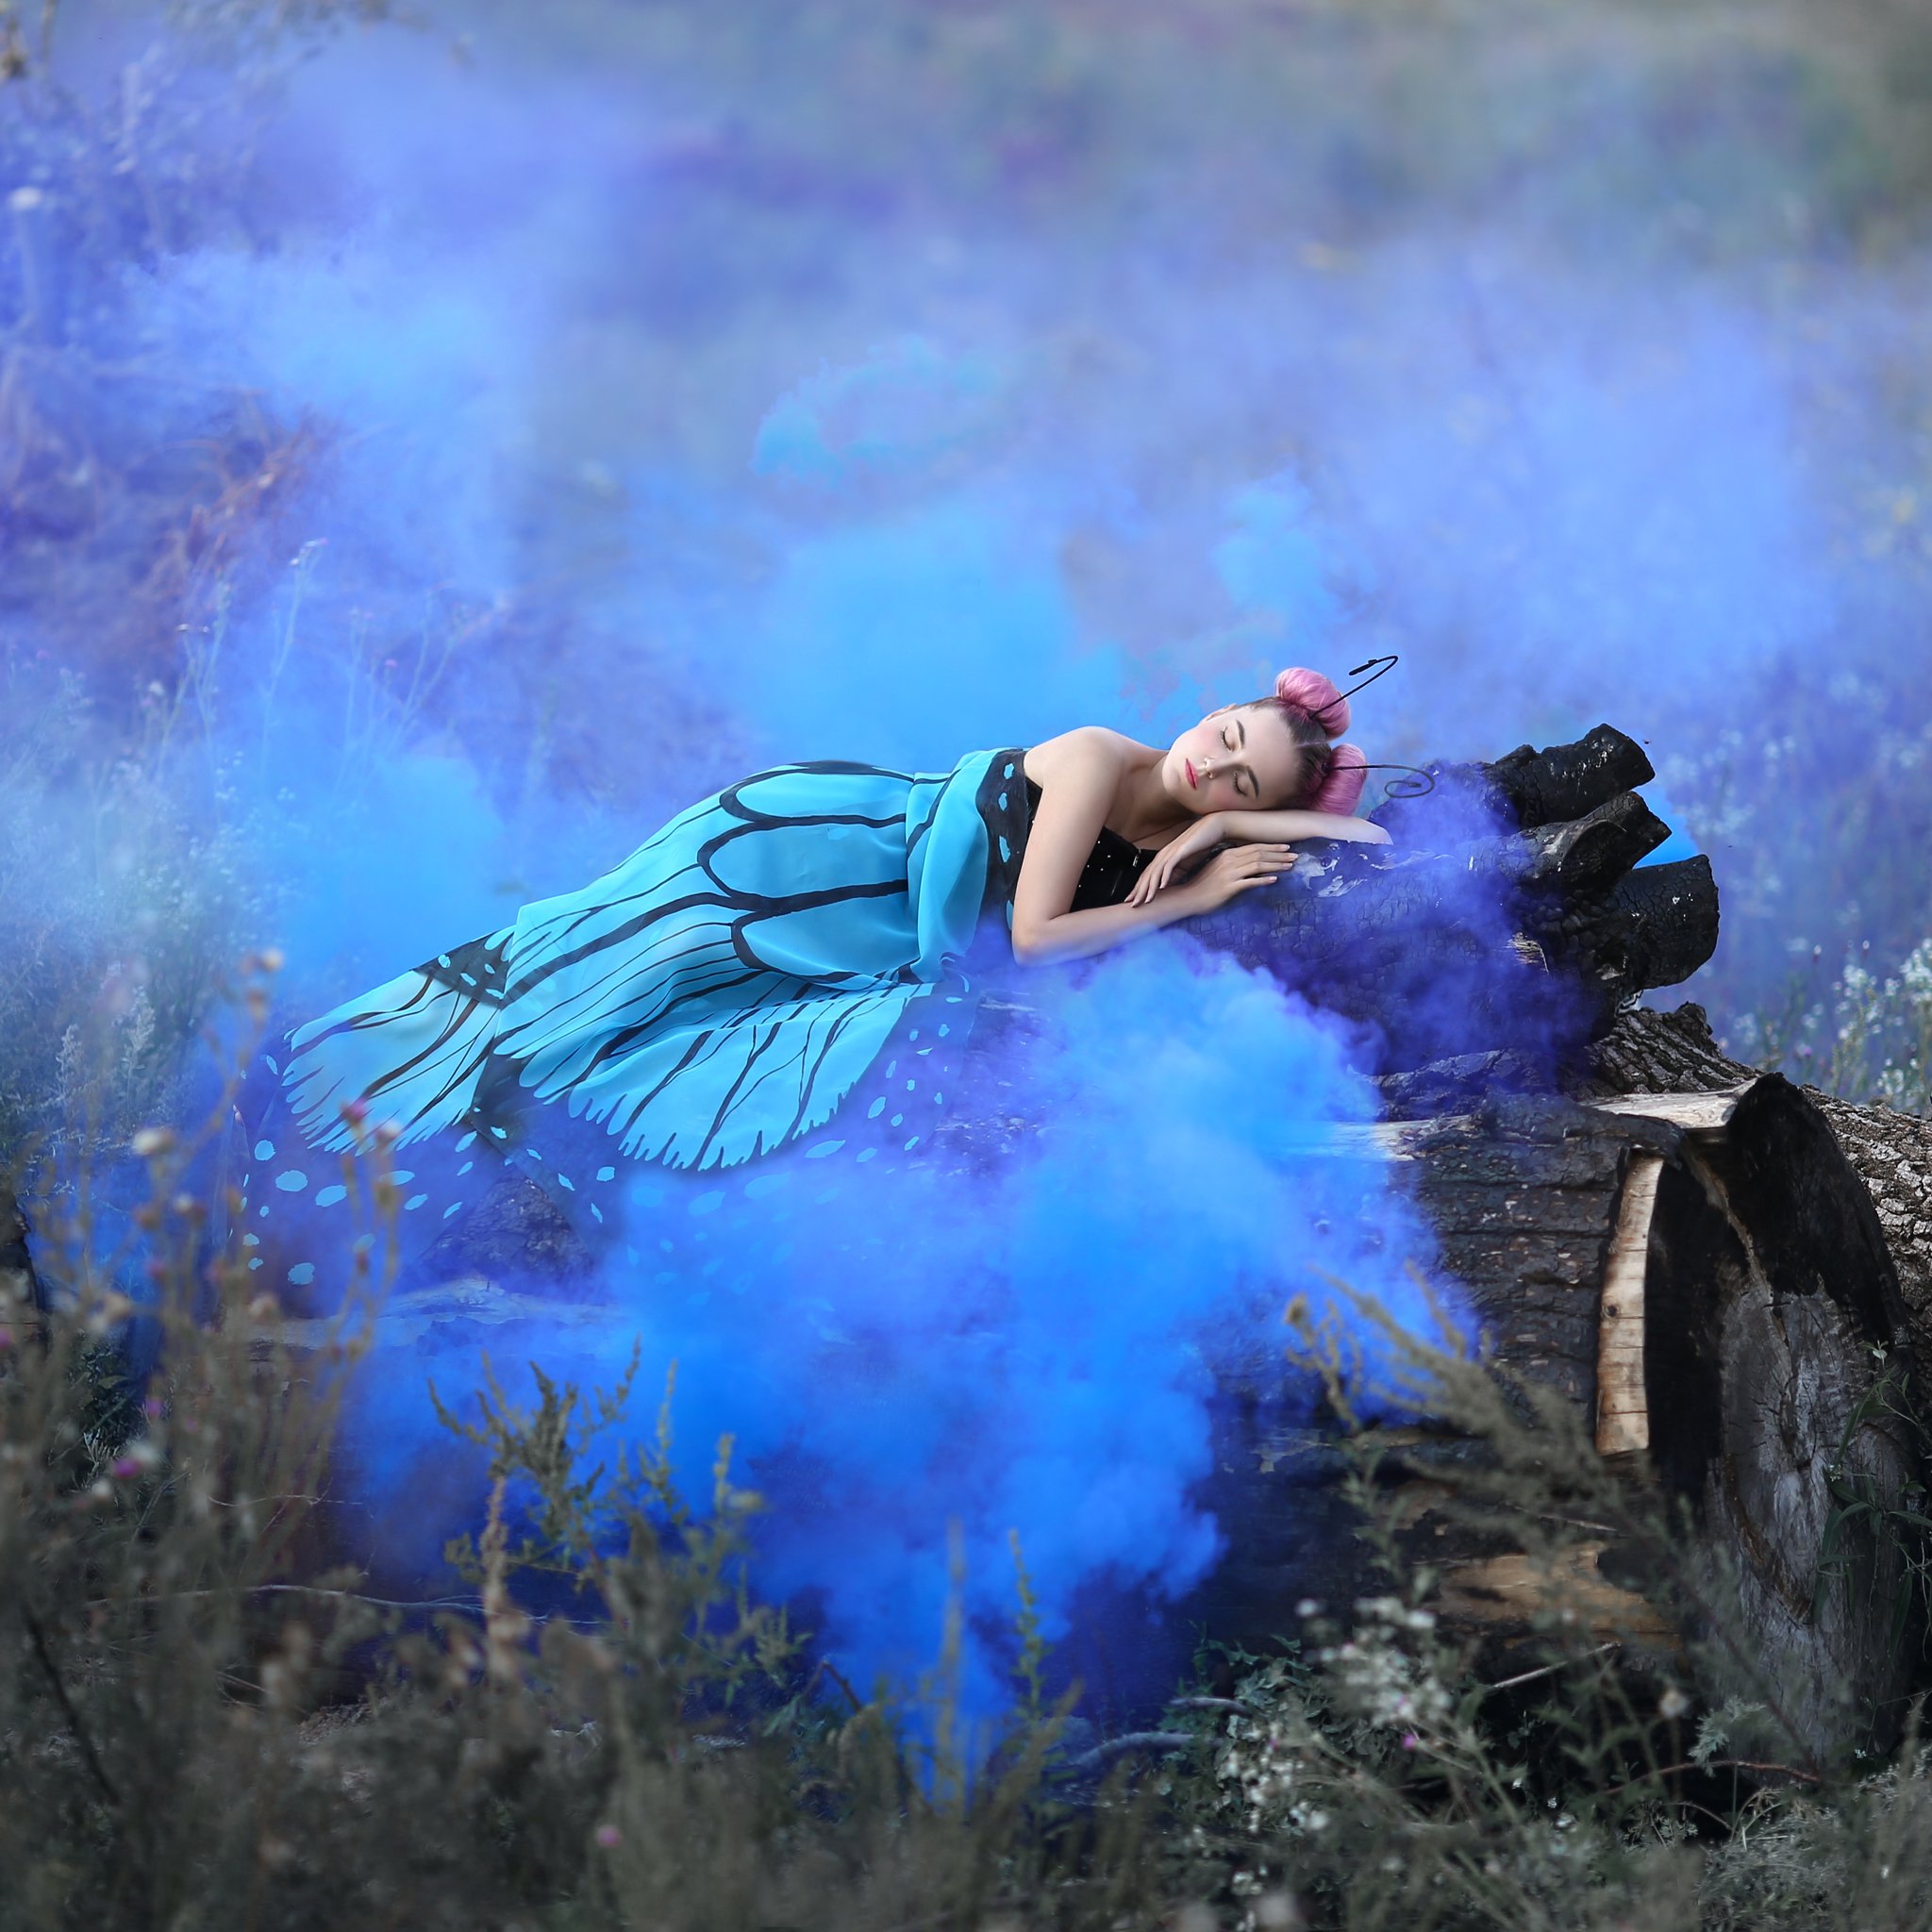 бабочка, голубой дым, синий, дым, пожарище, горелое дерево, крылья бабочки, Ирина Голубятникова